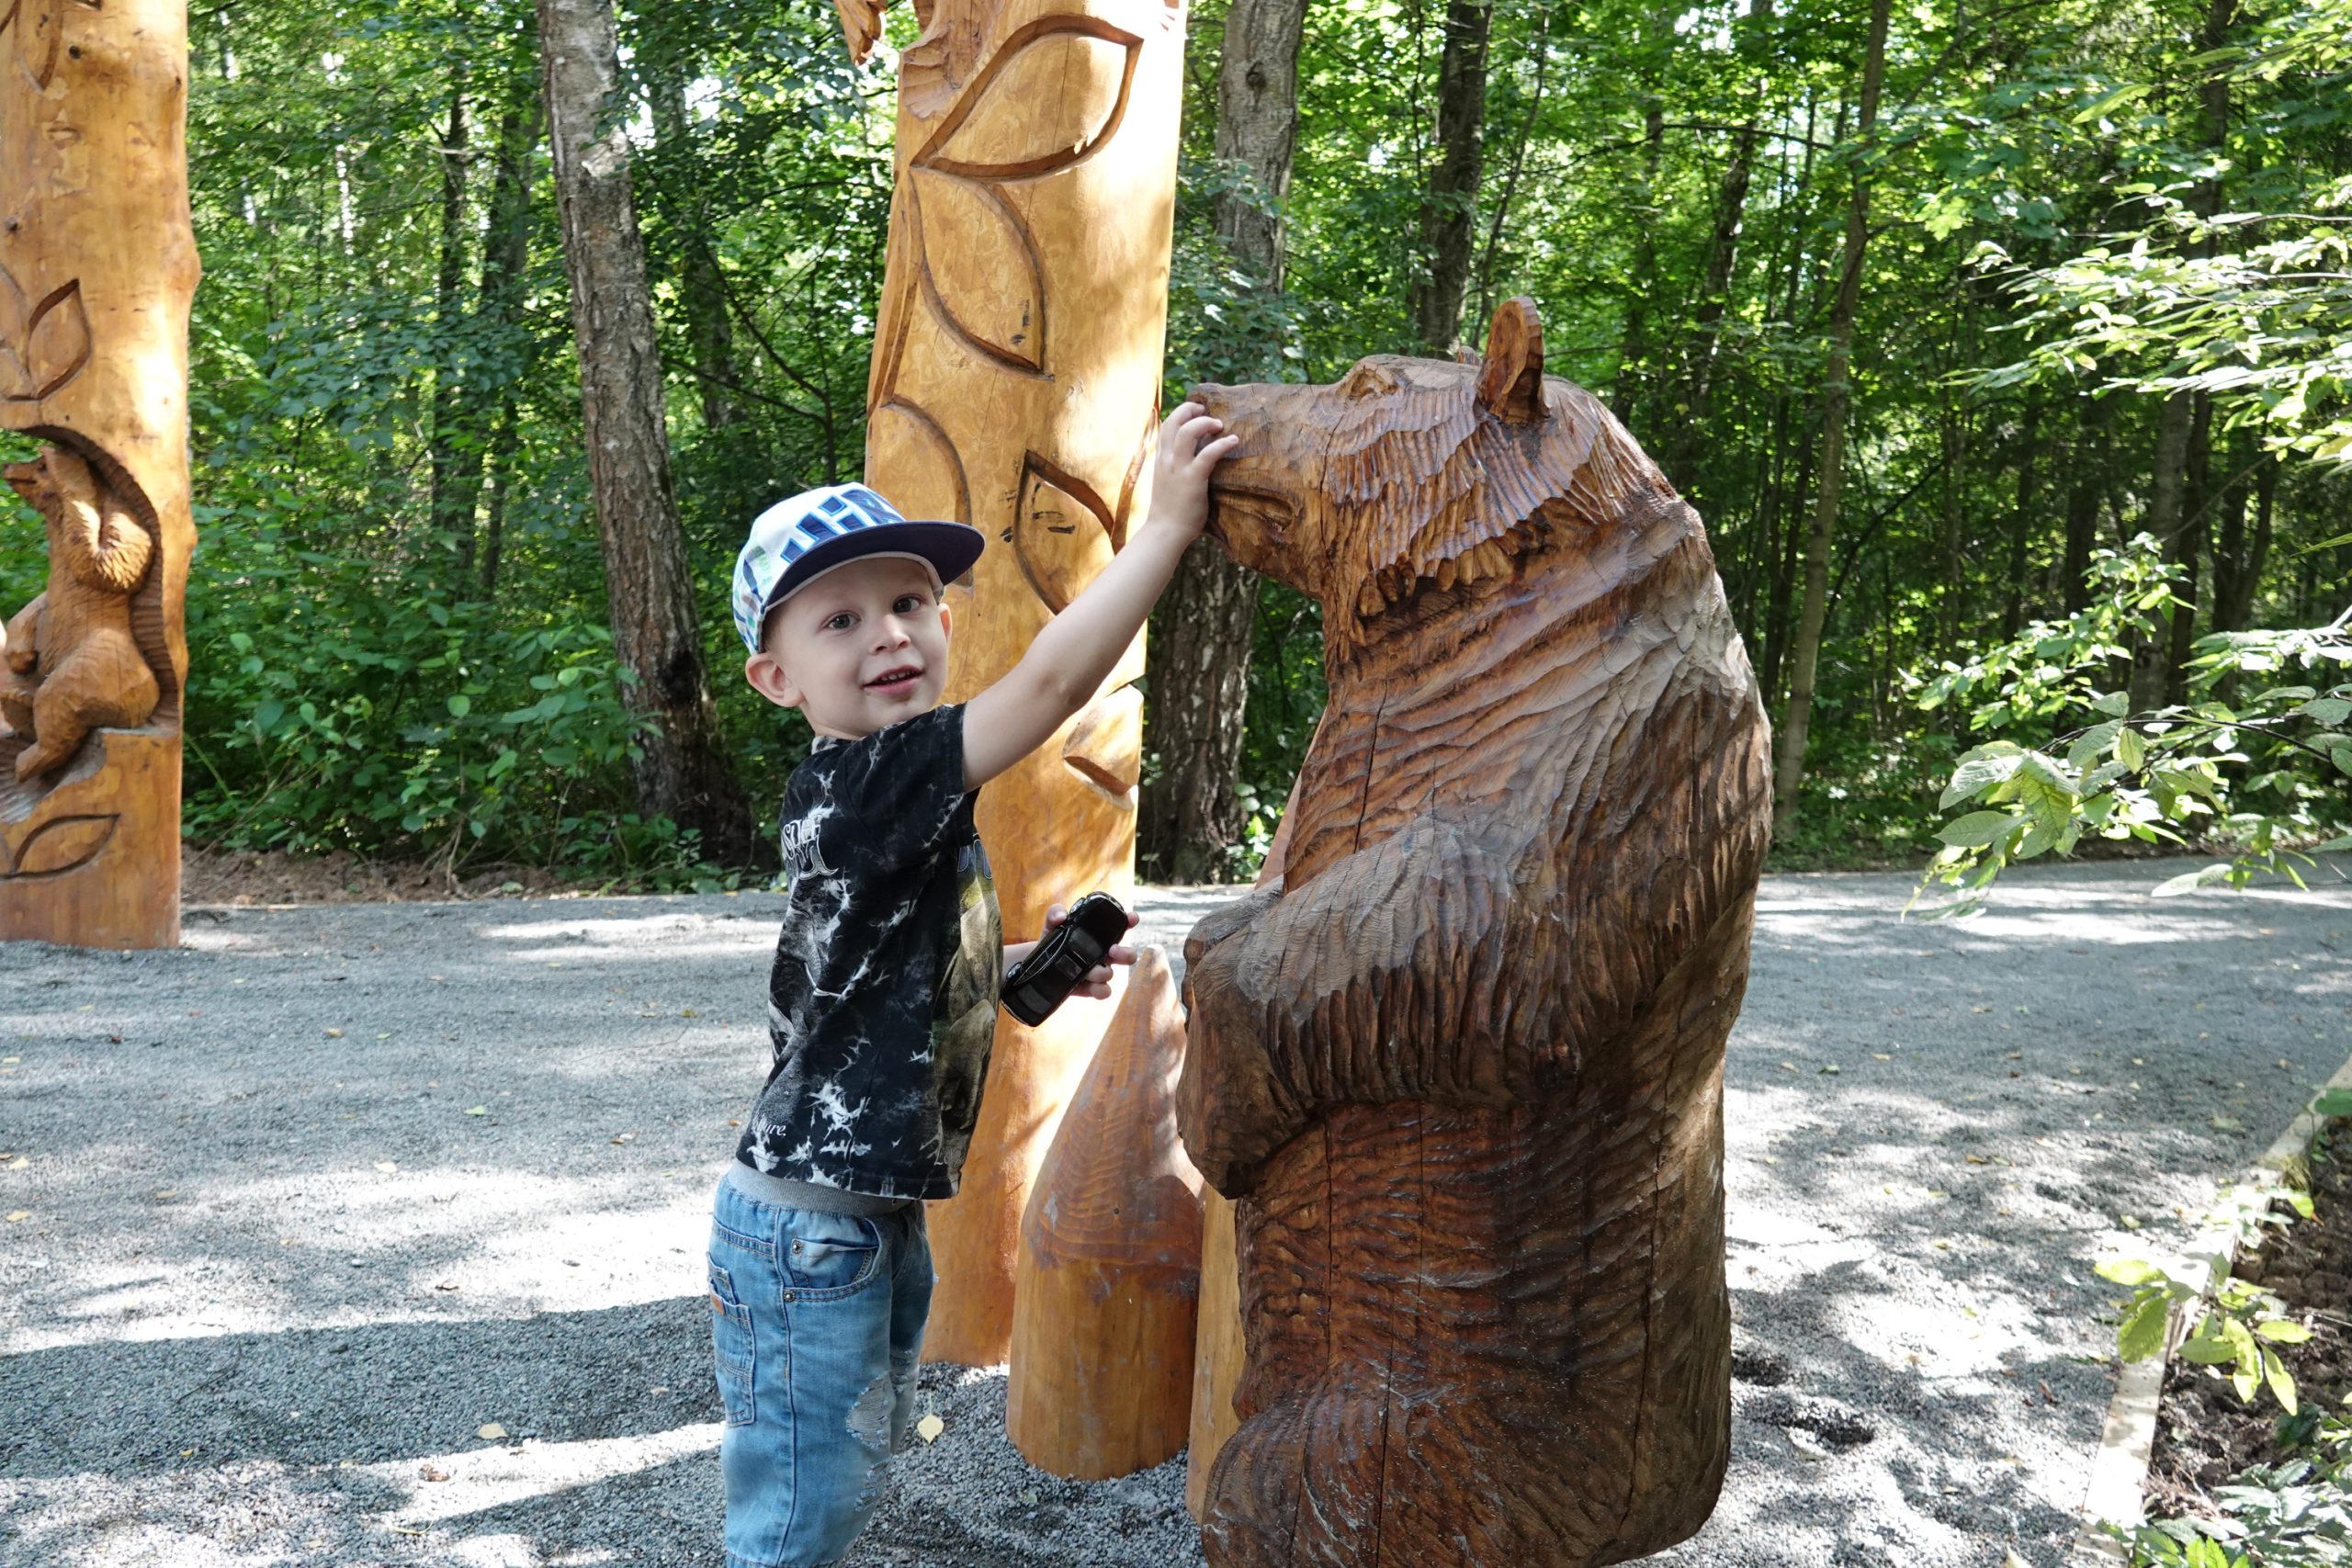 26 июля 2019 года. Юный житель поселения Московский Матвей Бурлак знакомится с деревянным медведем на экотропе.Фото: Виктор Хабаров